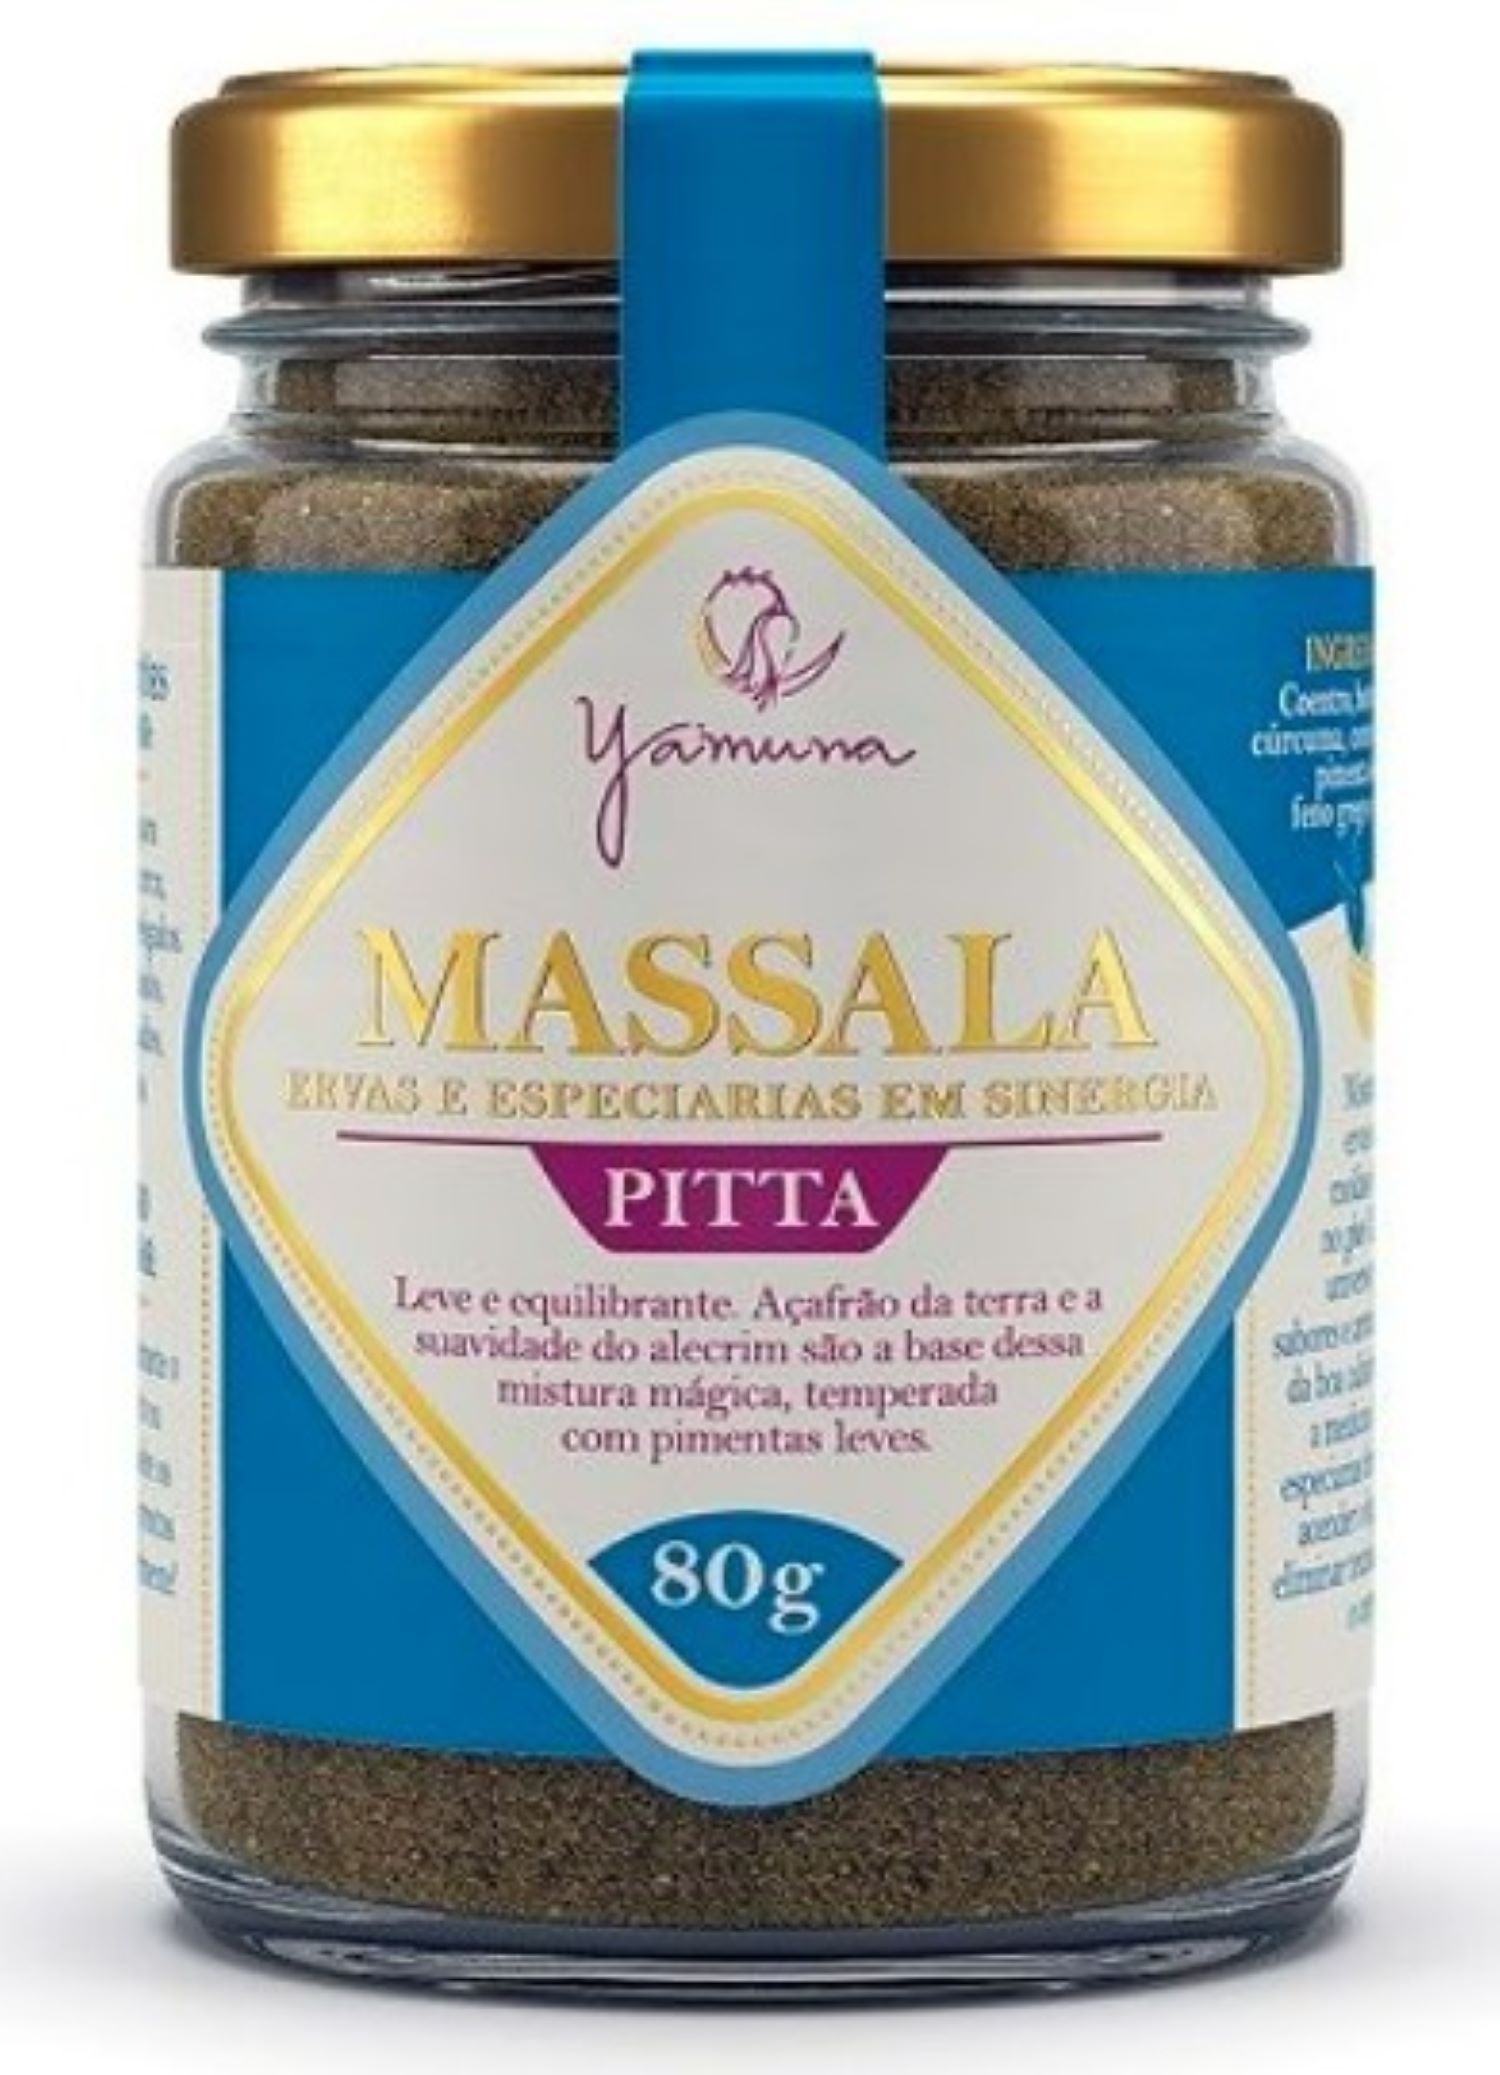 Massala Pitta - 80g